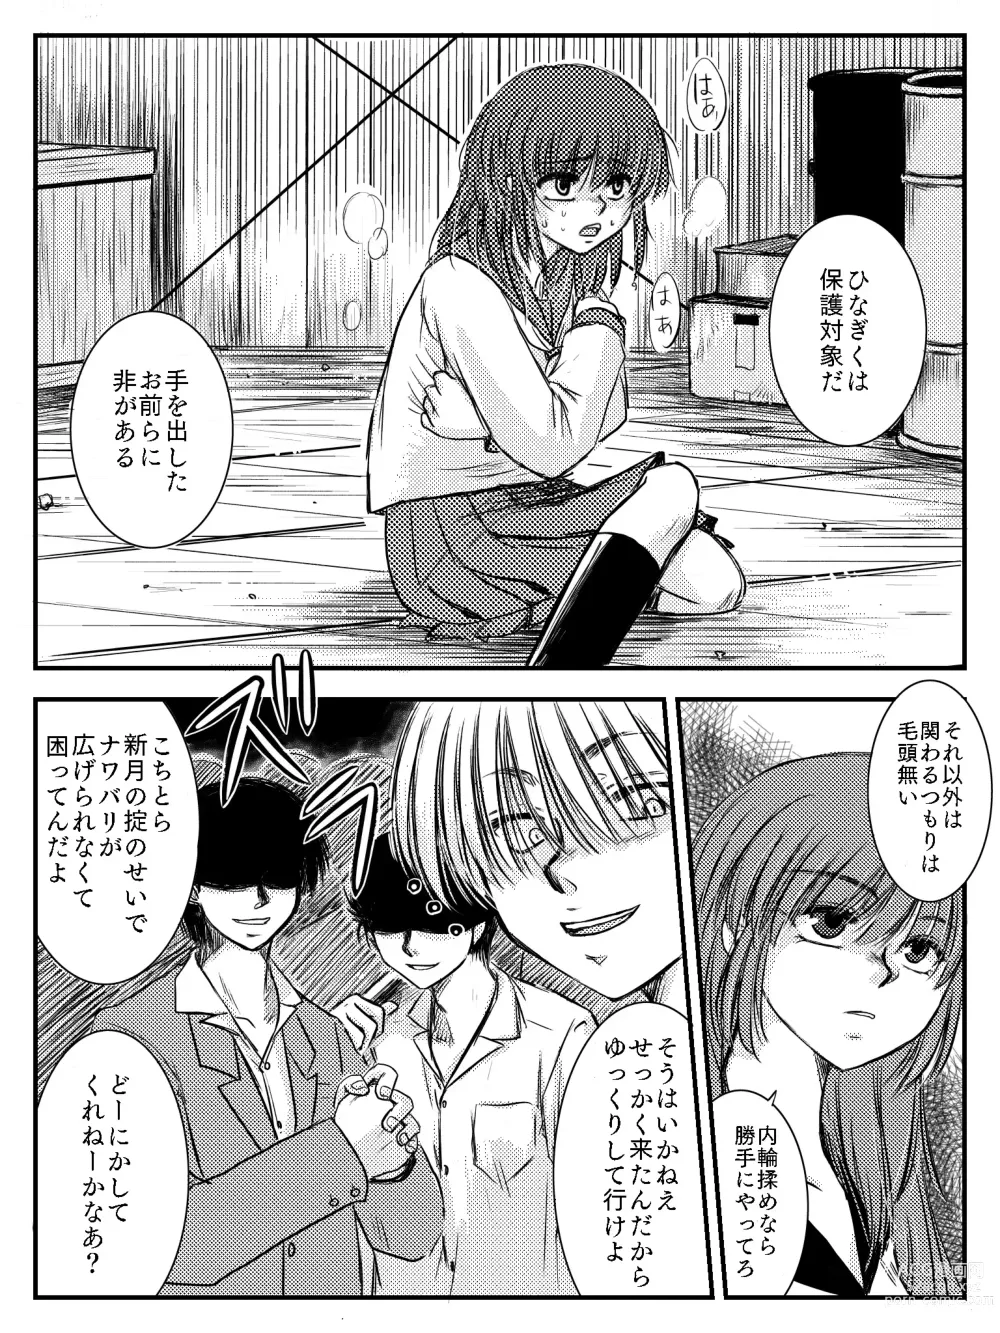 Page 82 of doujinshi LADIES NAVIGATION Episode 4